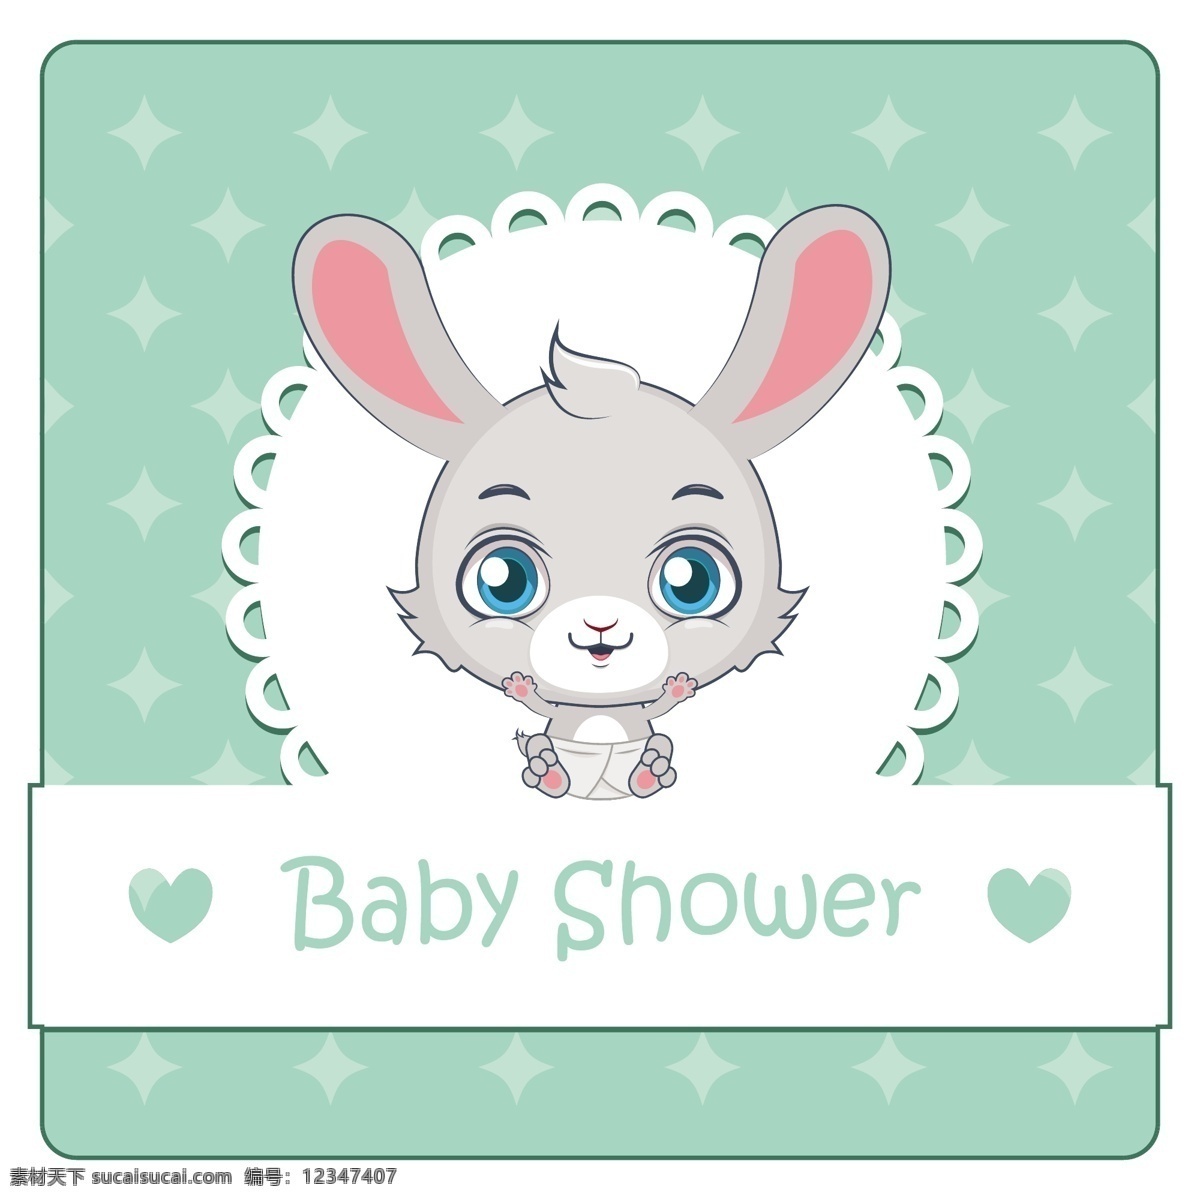 可爱 兔 宝宝 洗澡 背景 邀请 婴儿 卡片 模板 自然 婴儿淋浴 动物 请柬 庆祝 儿童 公寓 新的 兔子 平面设计 自然背景